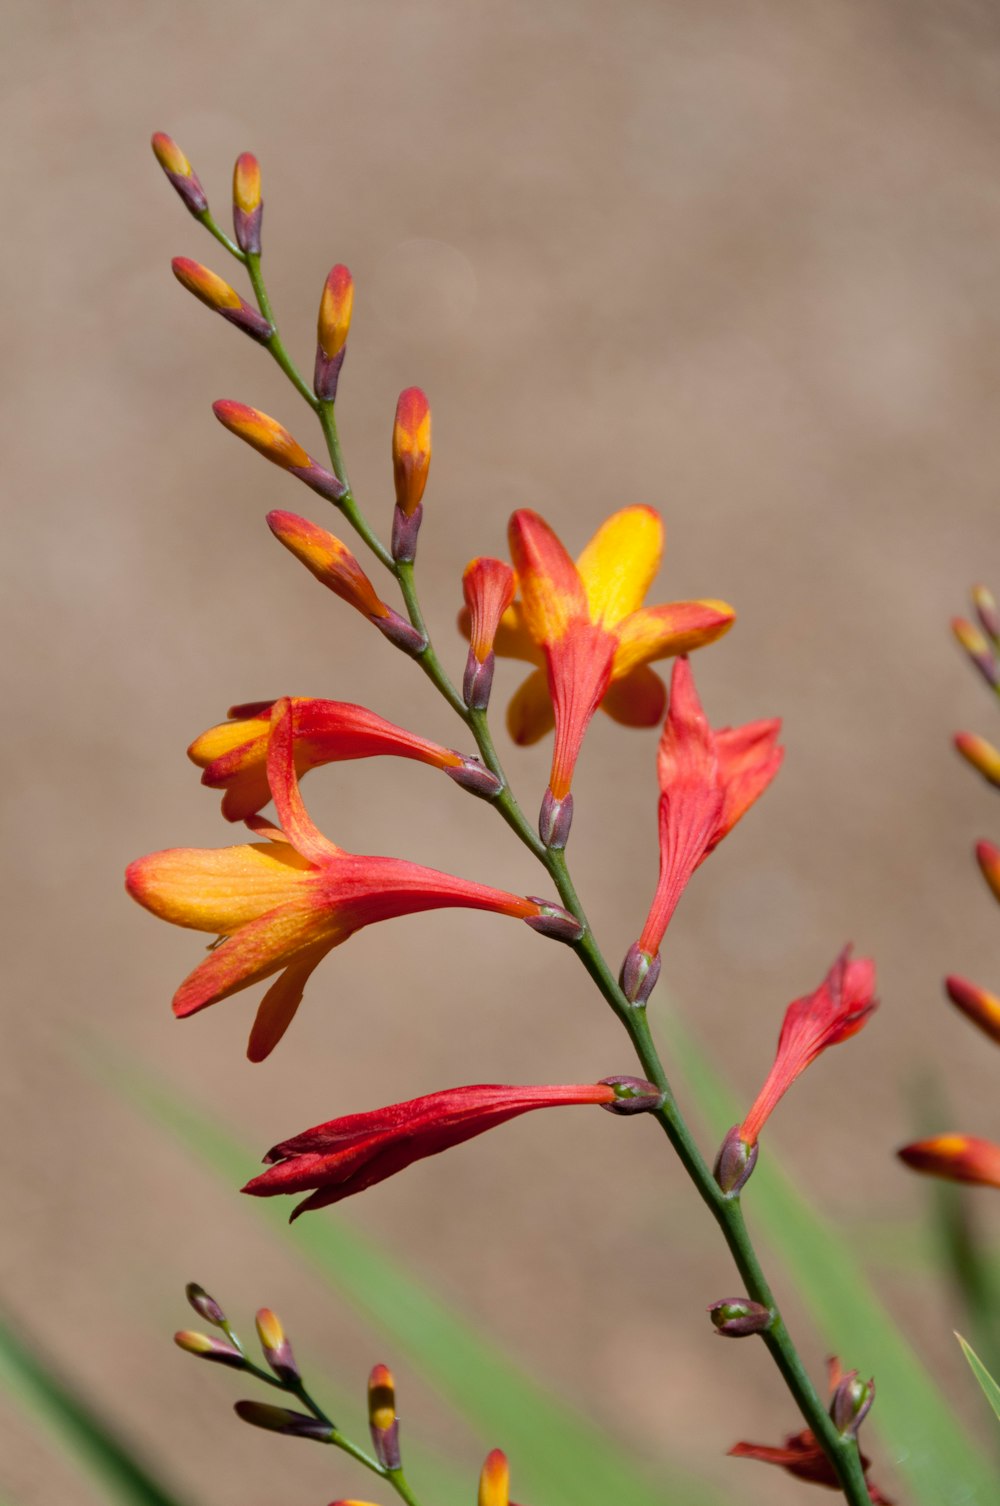 um close up de uma planta com flores vermelhas e amarelas